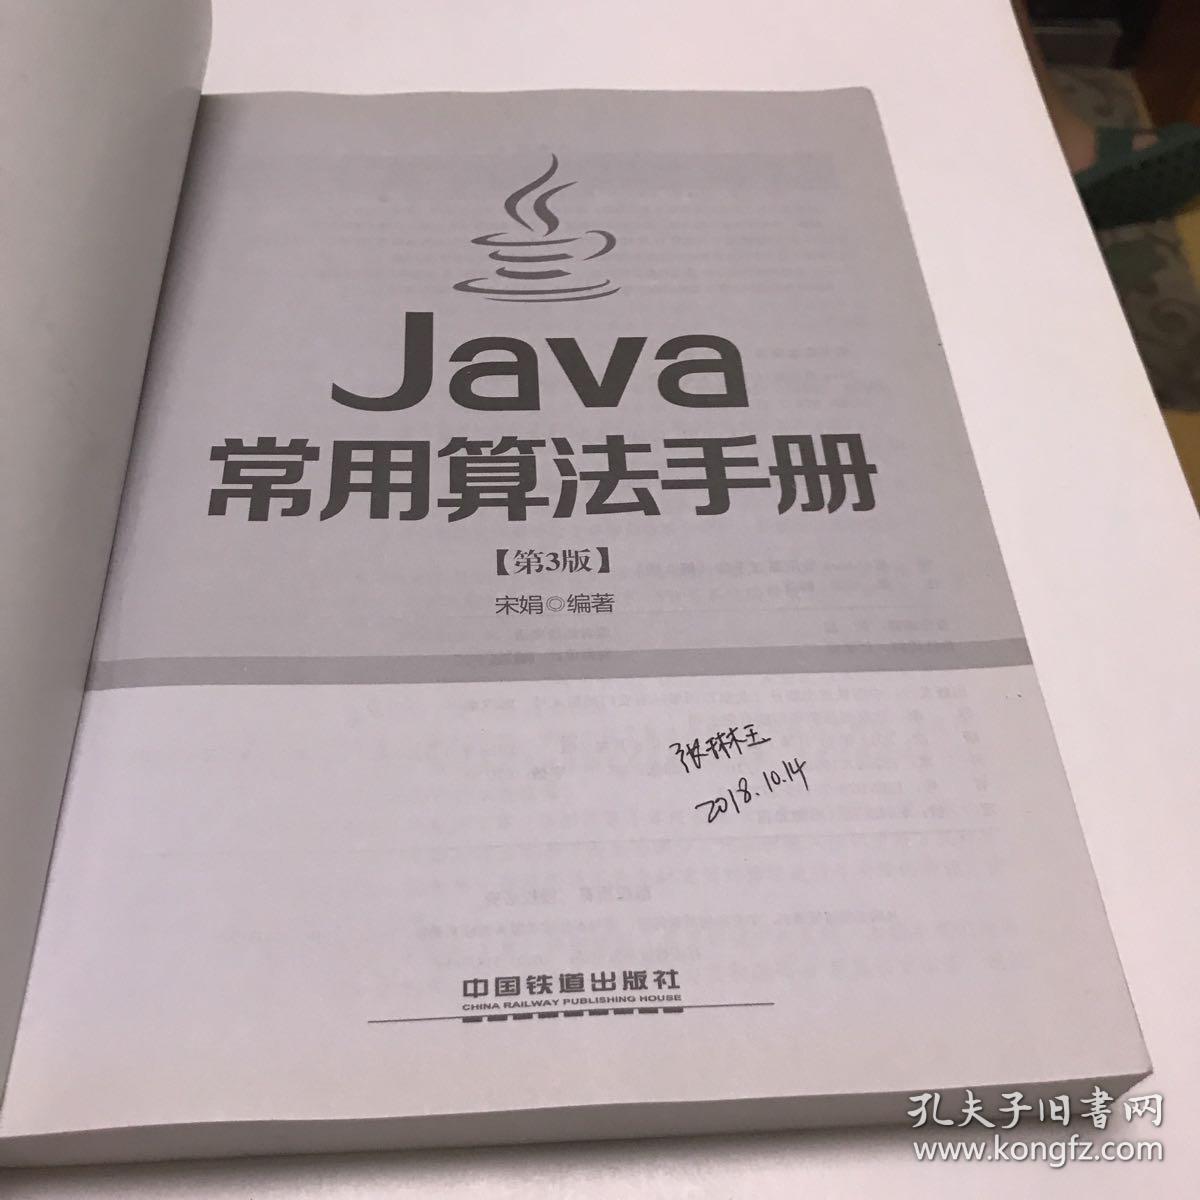 Java常用算法手册（第3版）